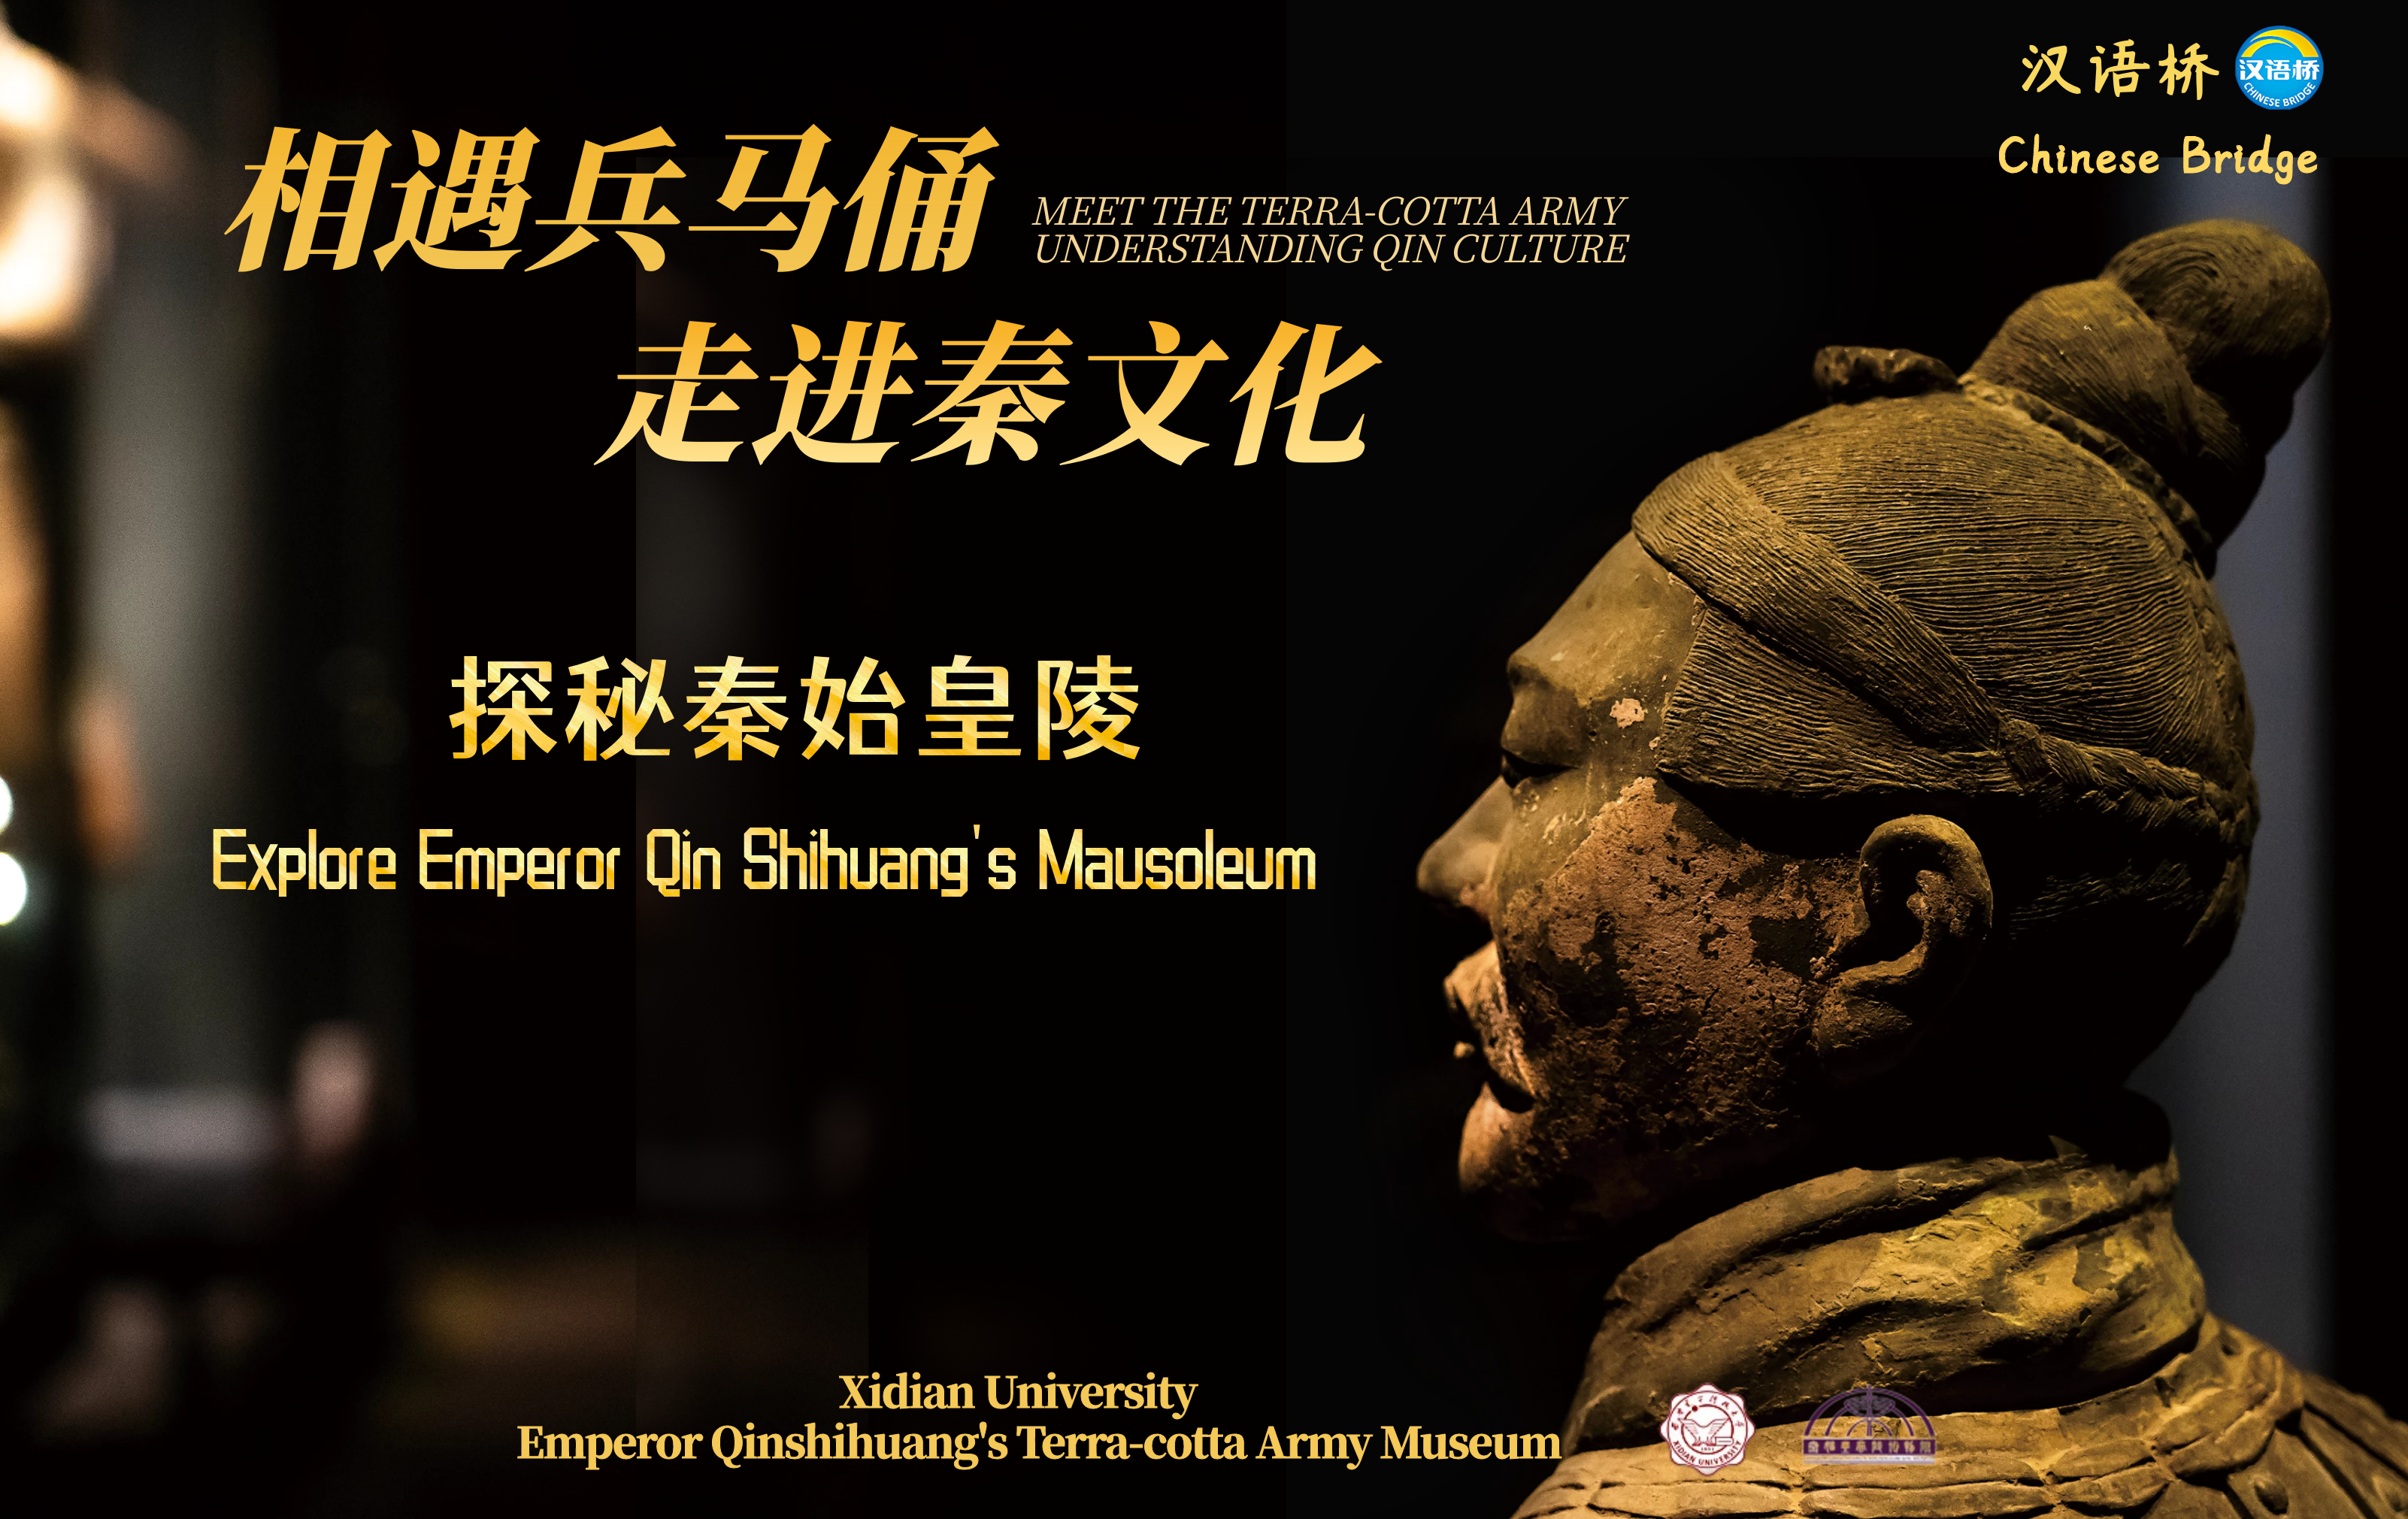 Explore Emperor Qin Shihuang’s Mausoleum Complex